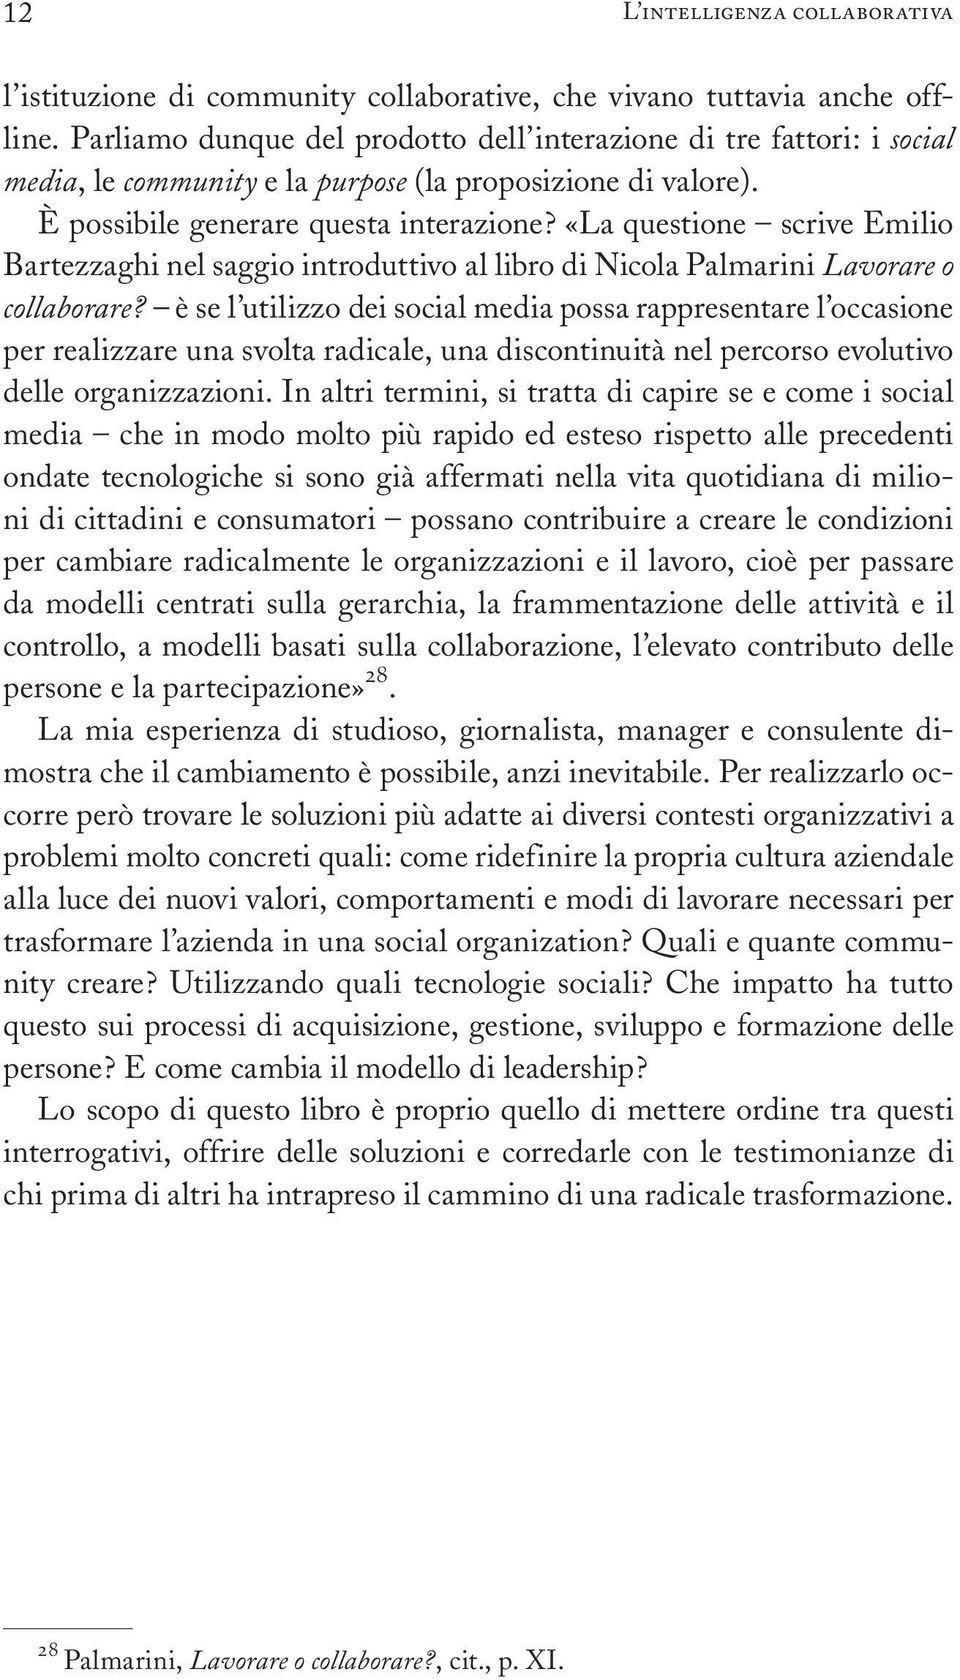 ÇLa questione Ð scrive Emilio Bartezzaghi nel saggio introduttivo al libro di Nicola Palmarini Lavorare o collaborare?